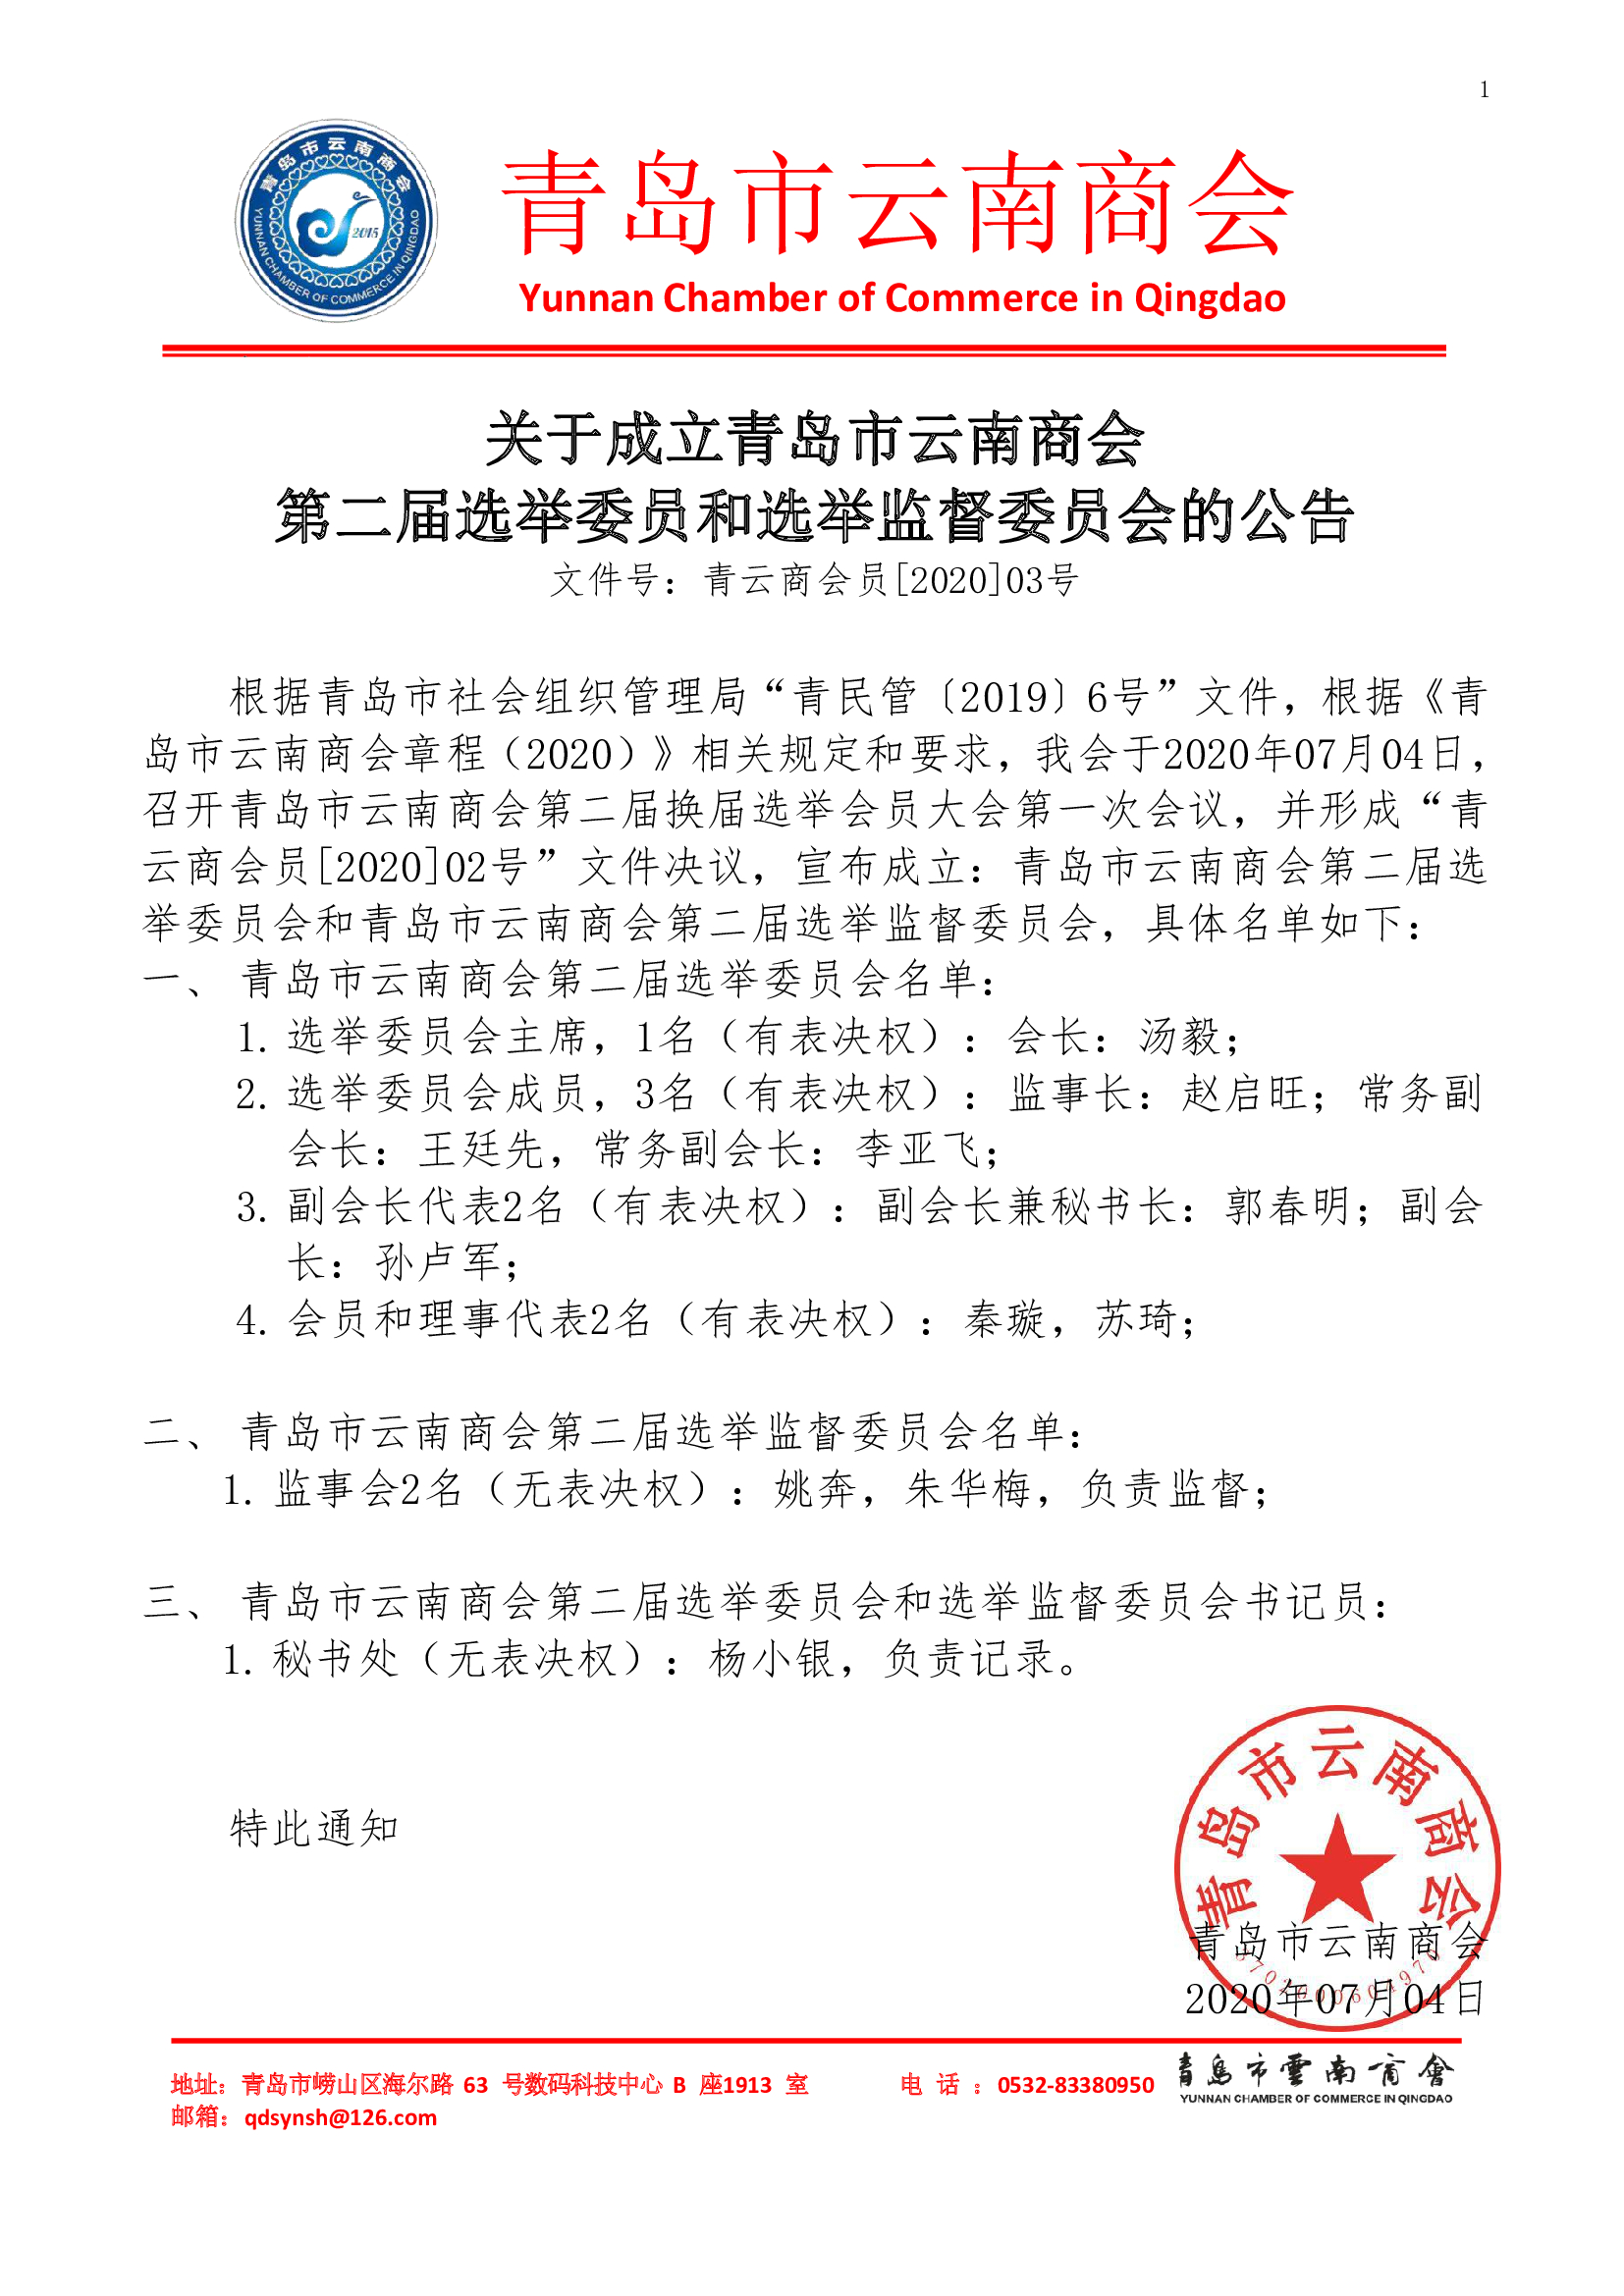 200704-4.2-关于成立青岛市云南商会第二届选举委员会和选举监督委员会的公告.jpg